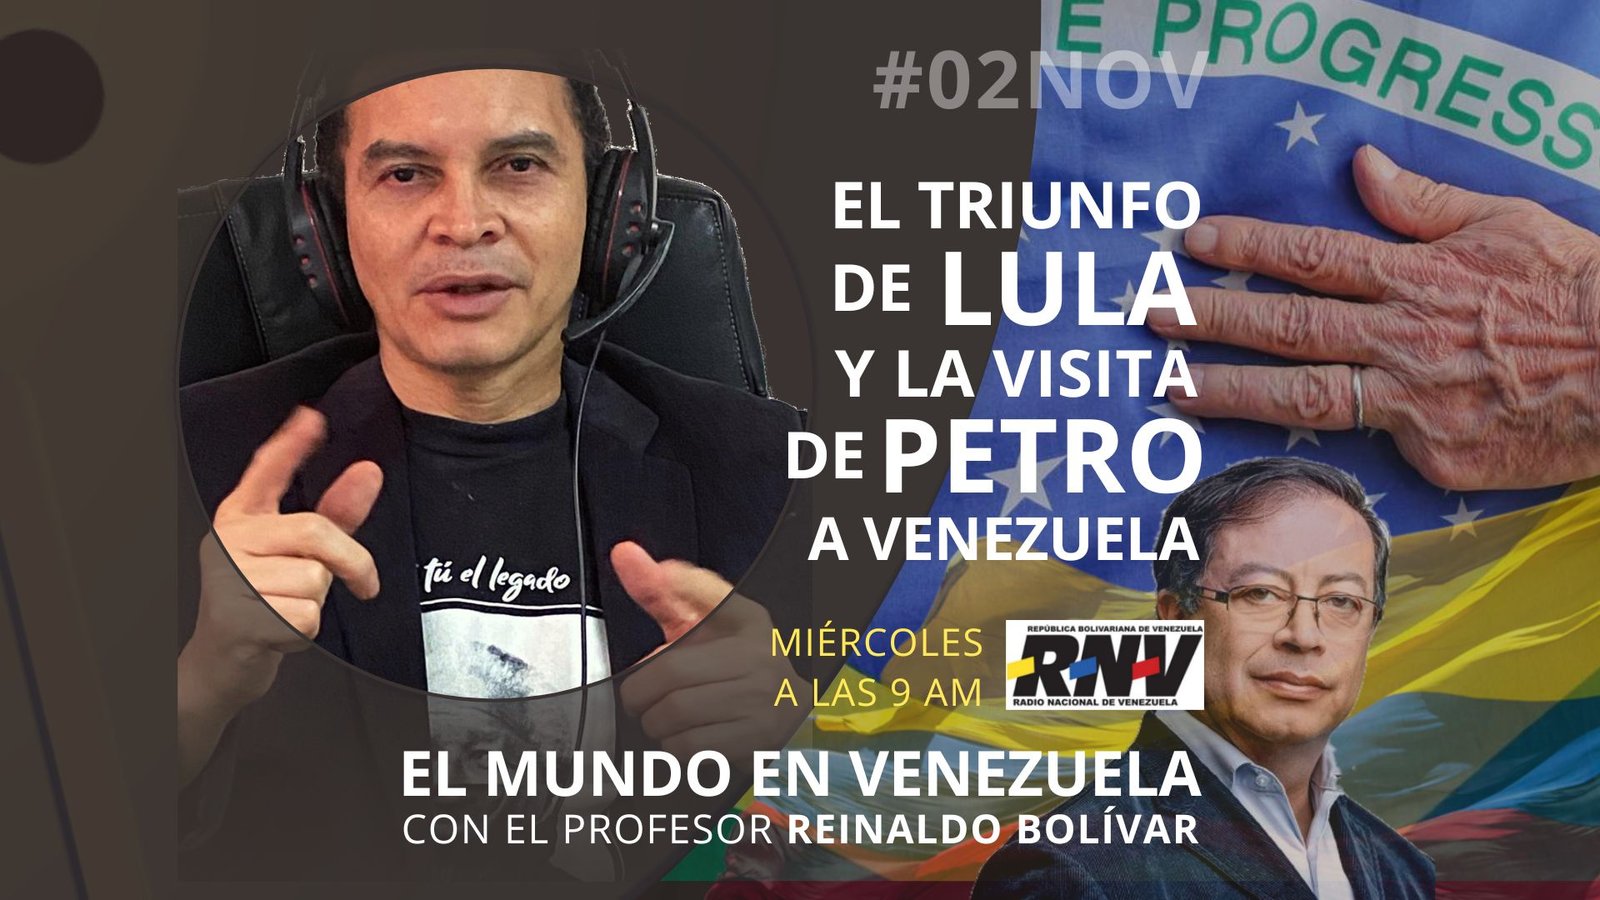 - Escucha el programa de El Mundo en Venezuela - #02nov 2022 - 